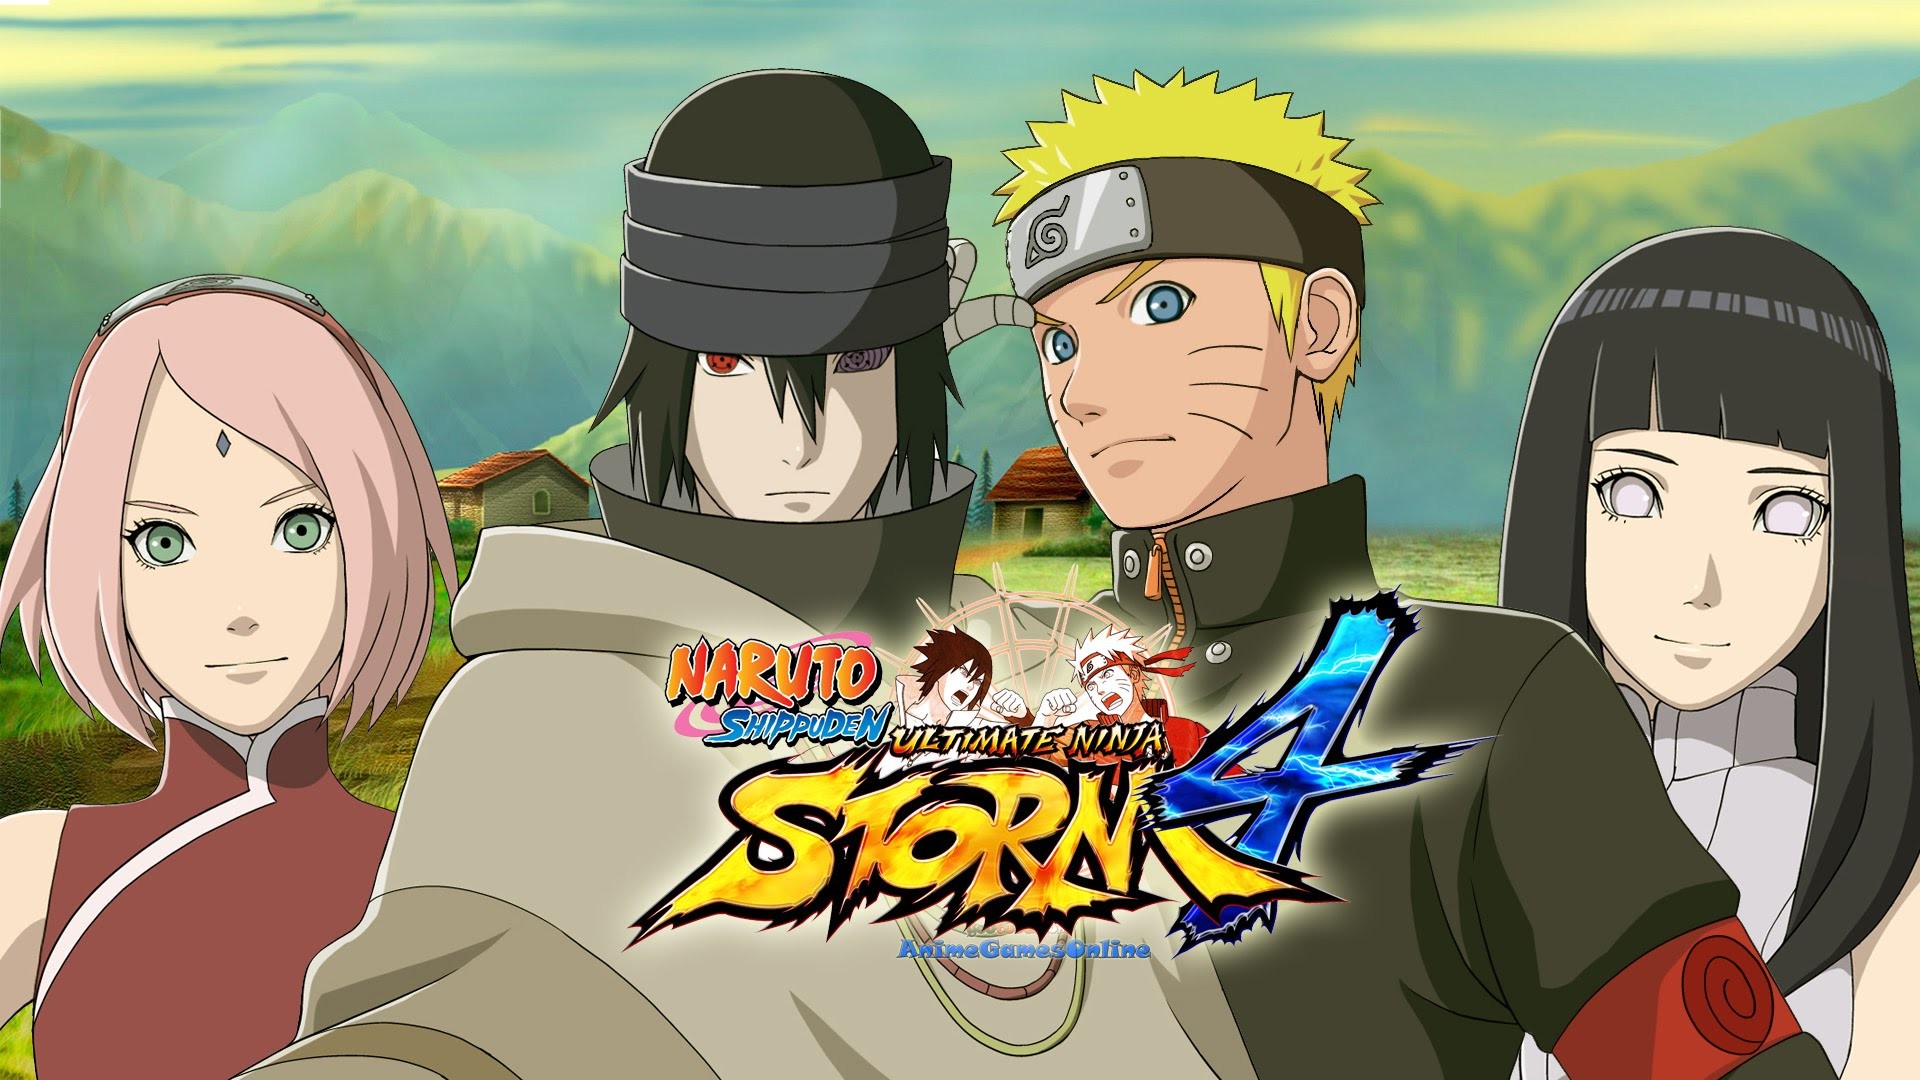 1920x1080 Naruto Storm 4 Gameplay 60+ Minutes THE LAST Sakura, Hinata, Naruto, Sasuke  DLC | Gamescom 2015 Demo - YouTube